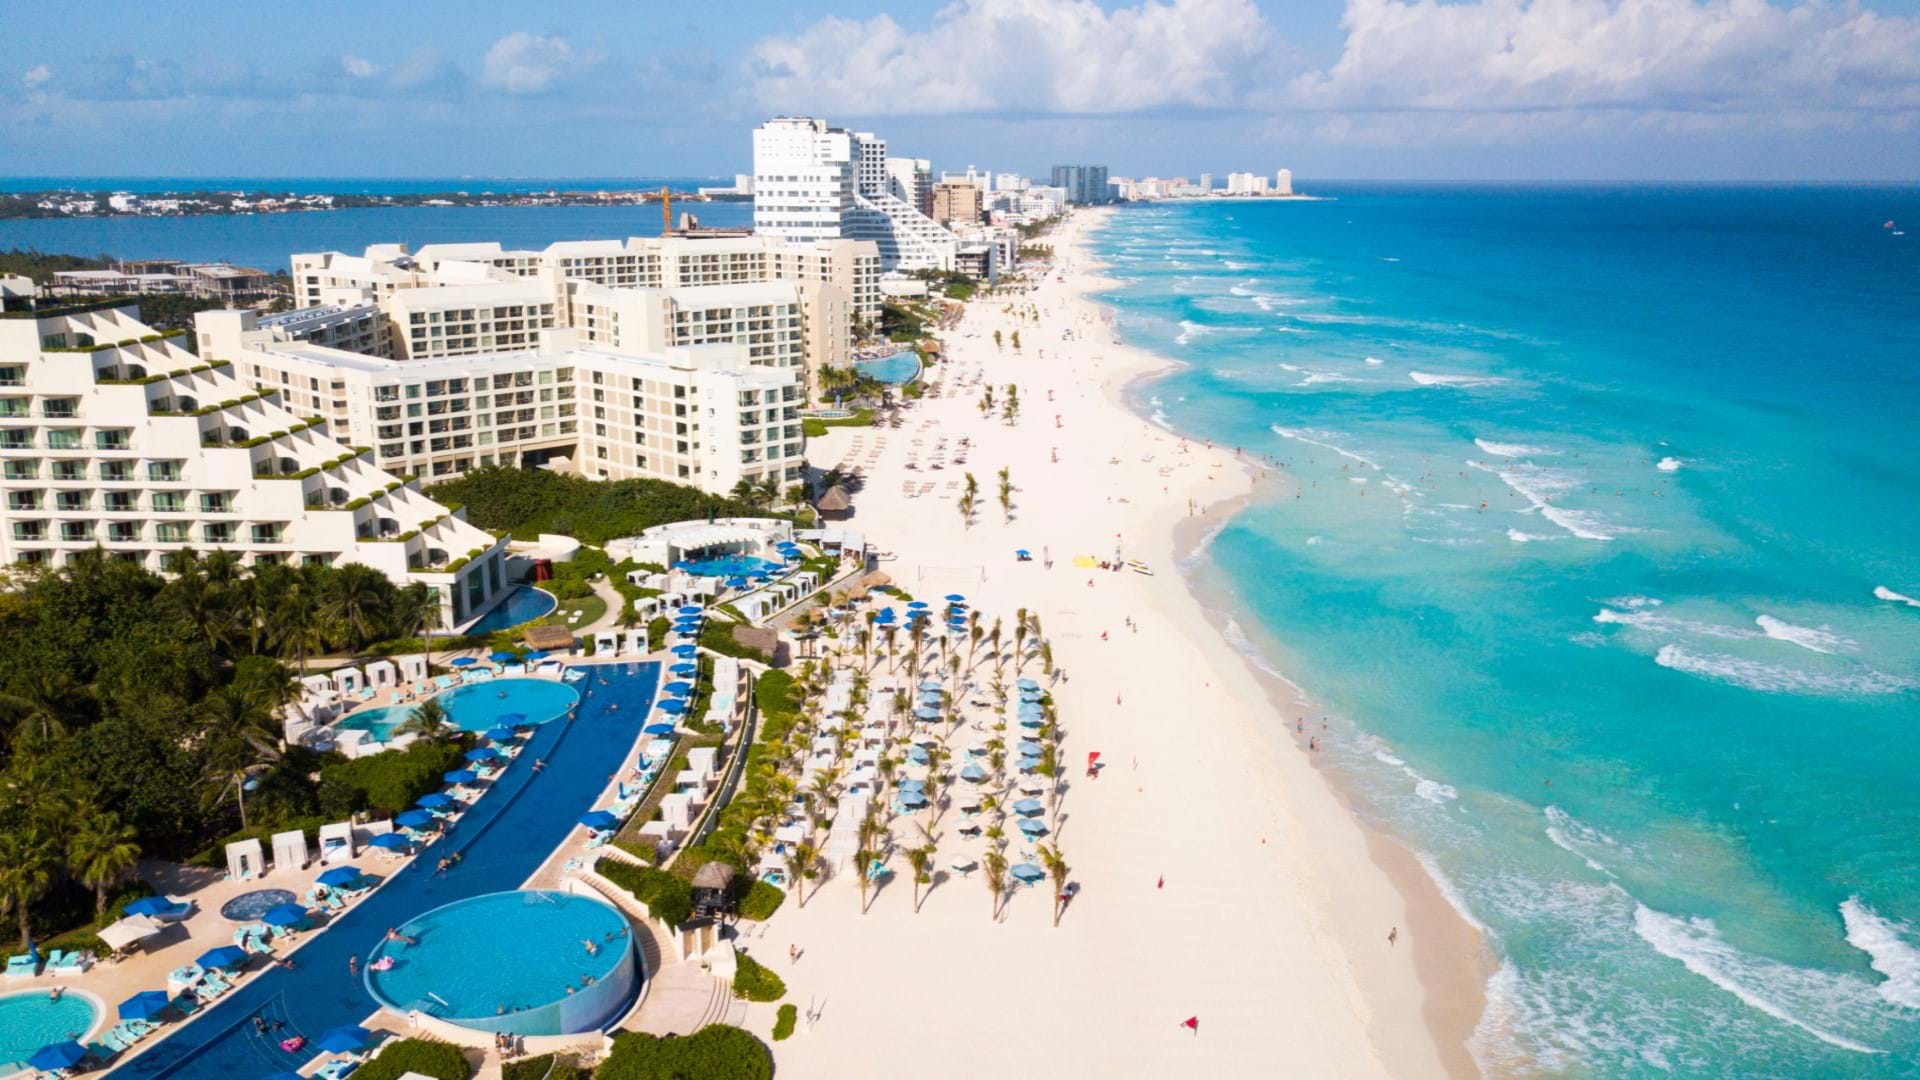 Rivijera Hotelijera u mestu Kankun. Obala sa preko 100 hotela iz najpoznatijih svetskih lanaca hotela. Tirkizna obala i savršeno plava boja mora.